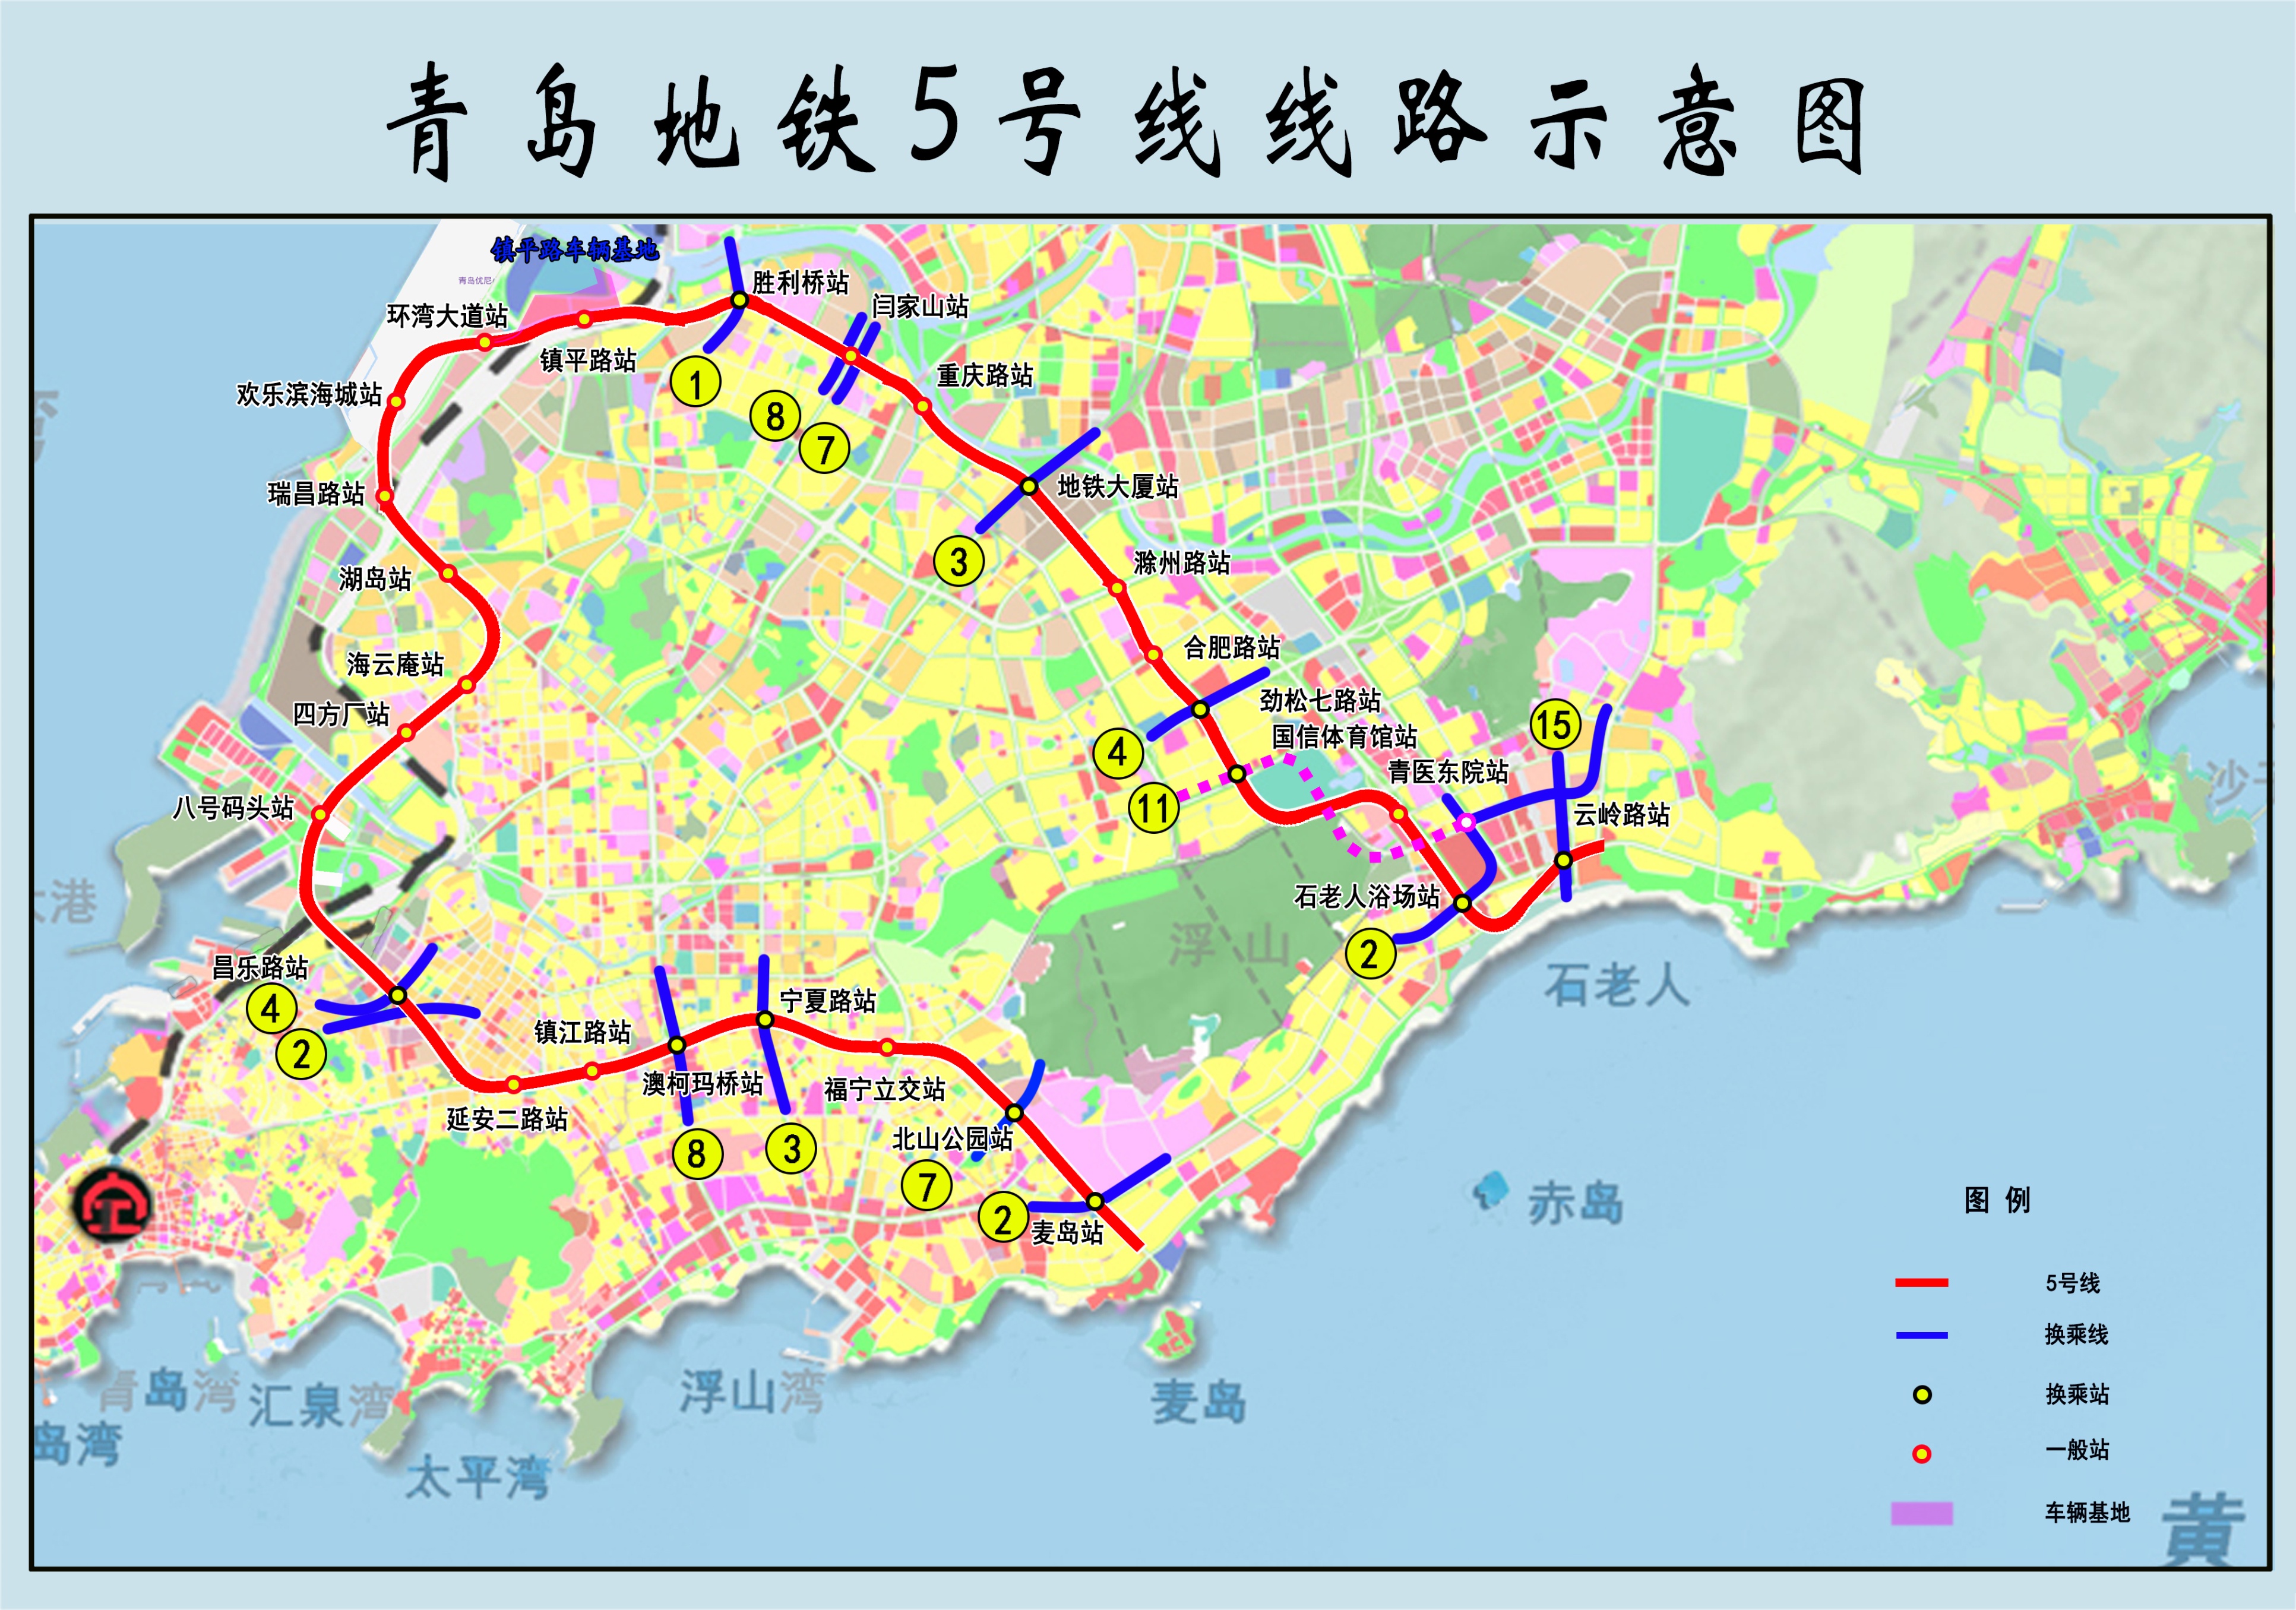 青岛地铁5号线最新进展来了青岛地铁5号线麦北区间(麦岛站-北山公园站